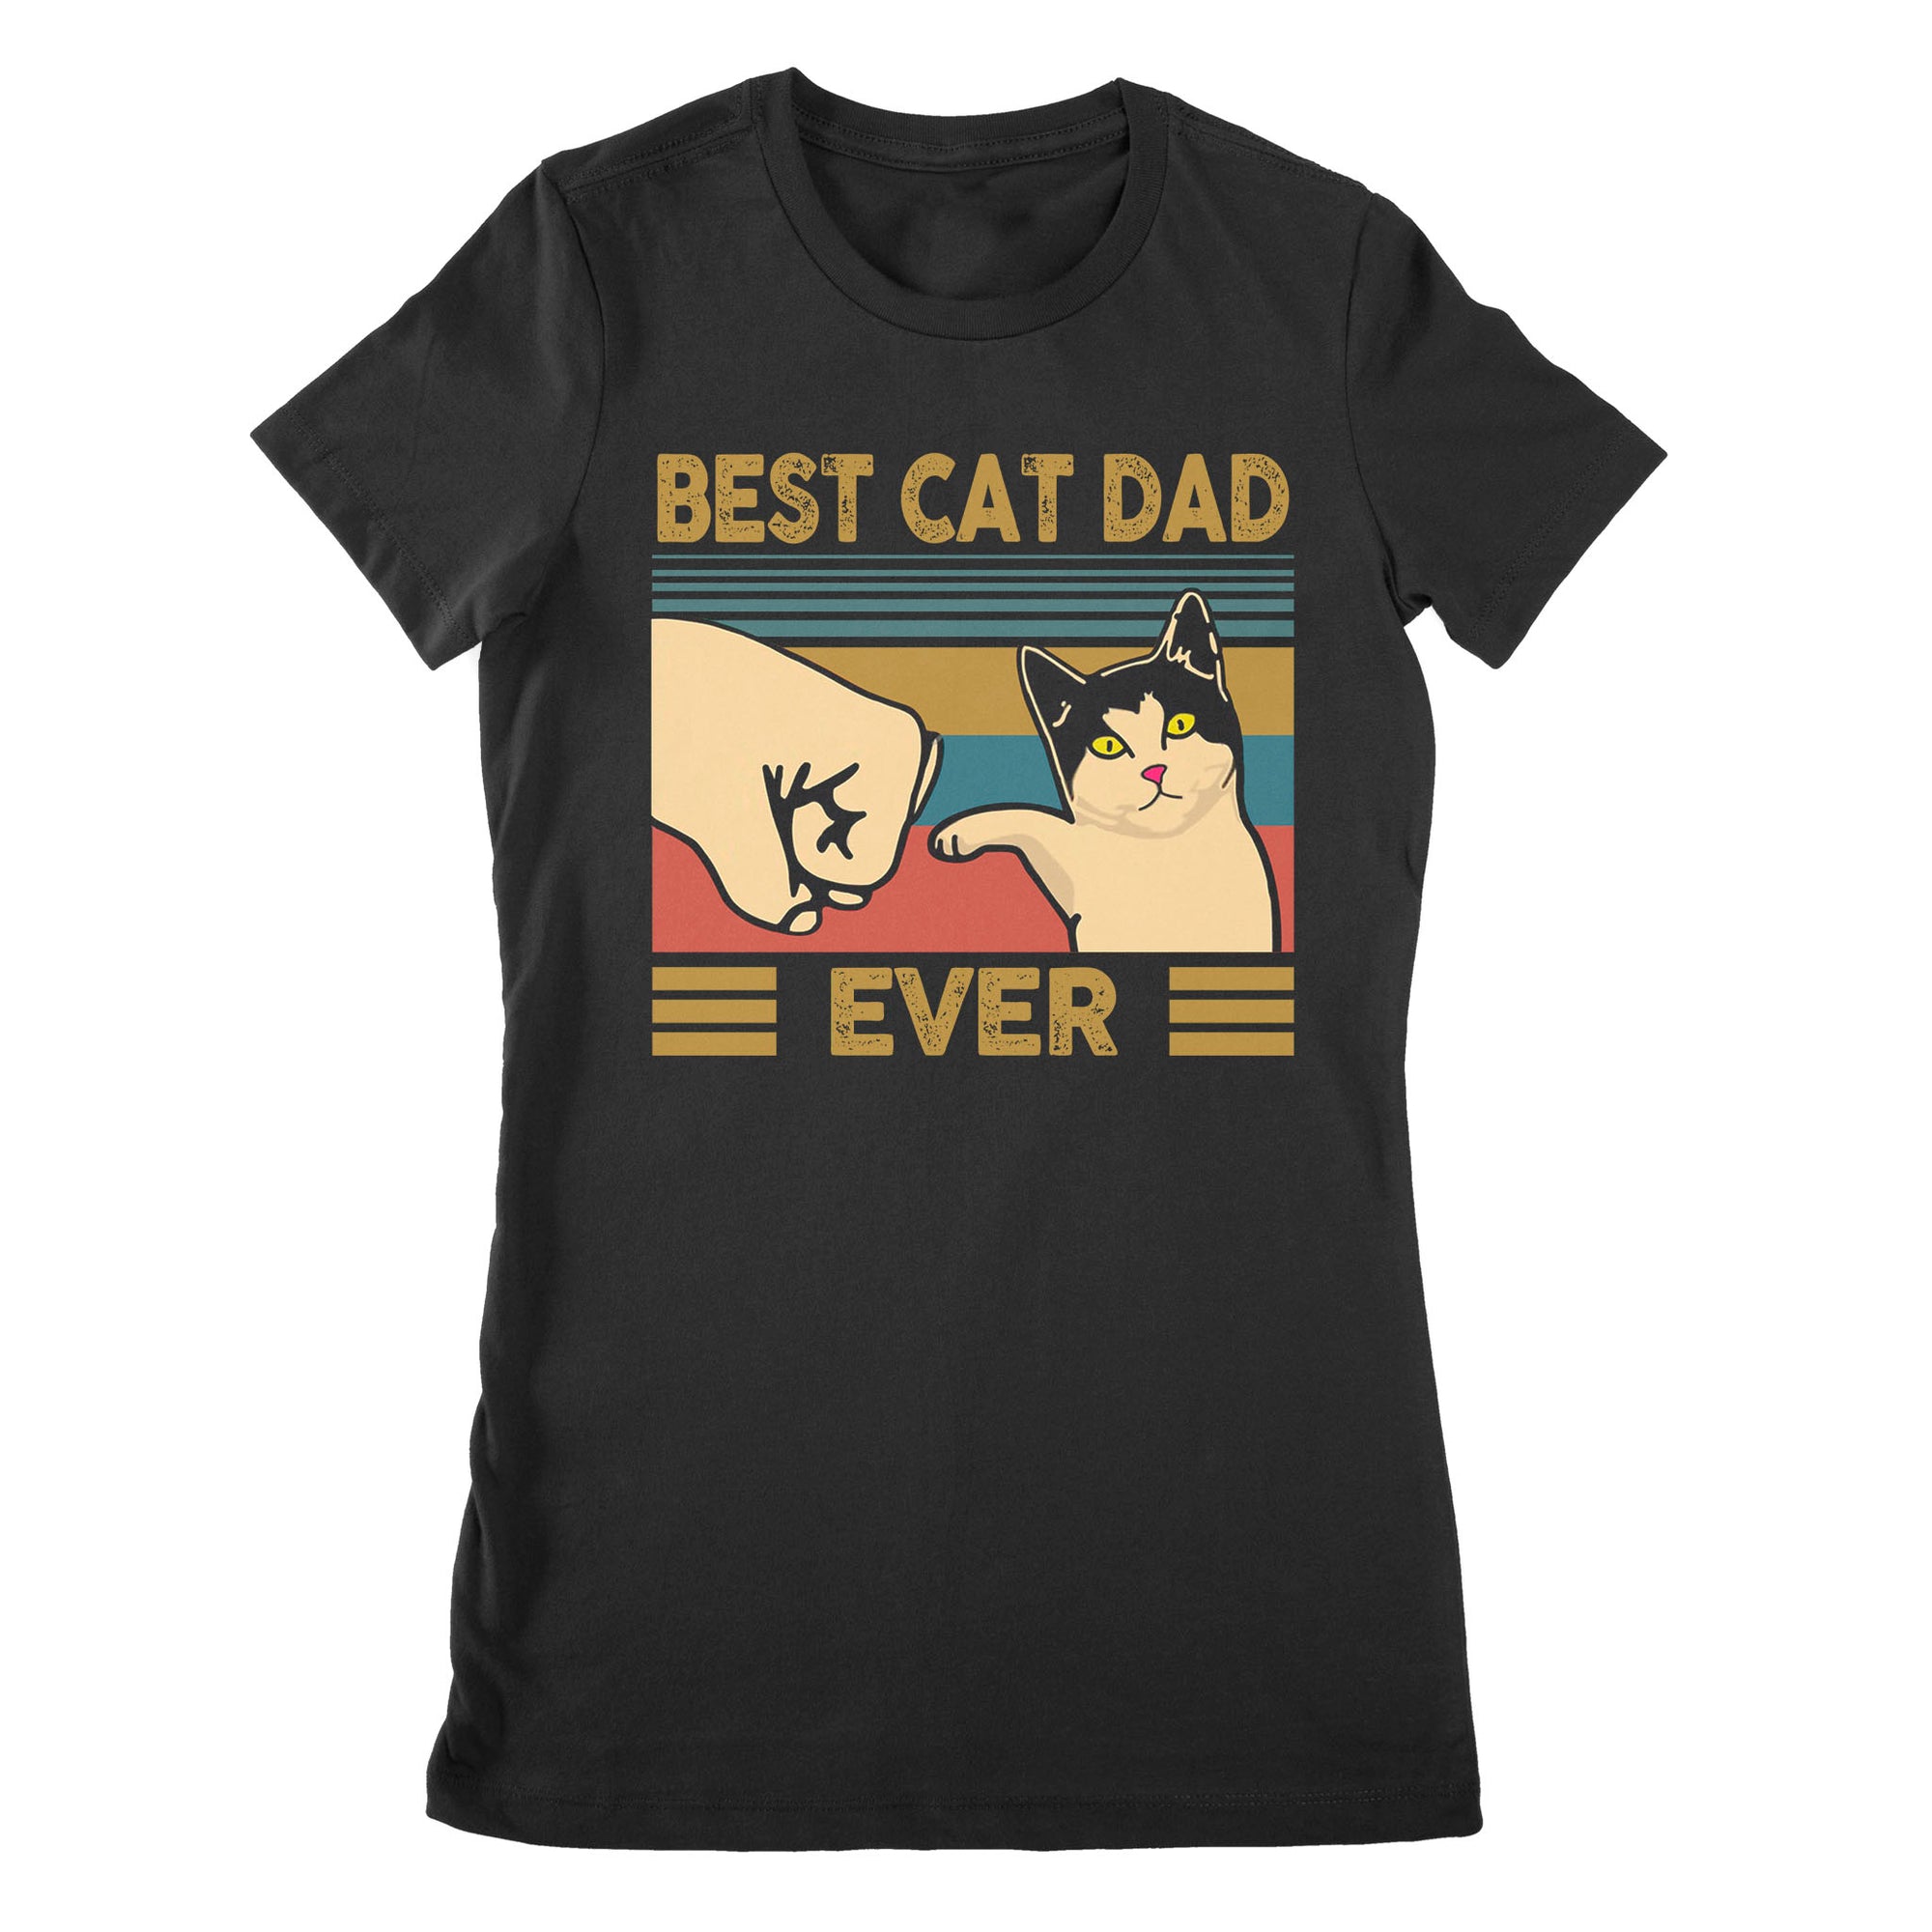 Premium Women's T-shirt - Best Cat Dad Ever